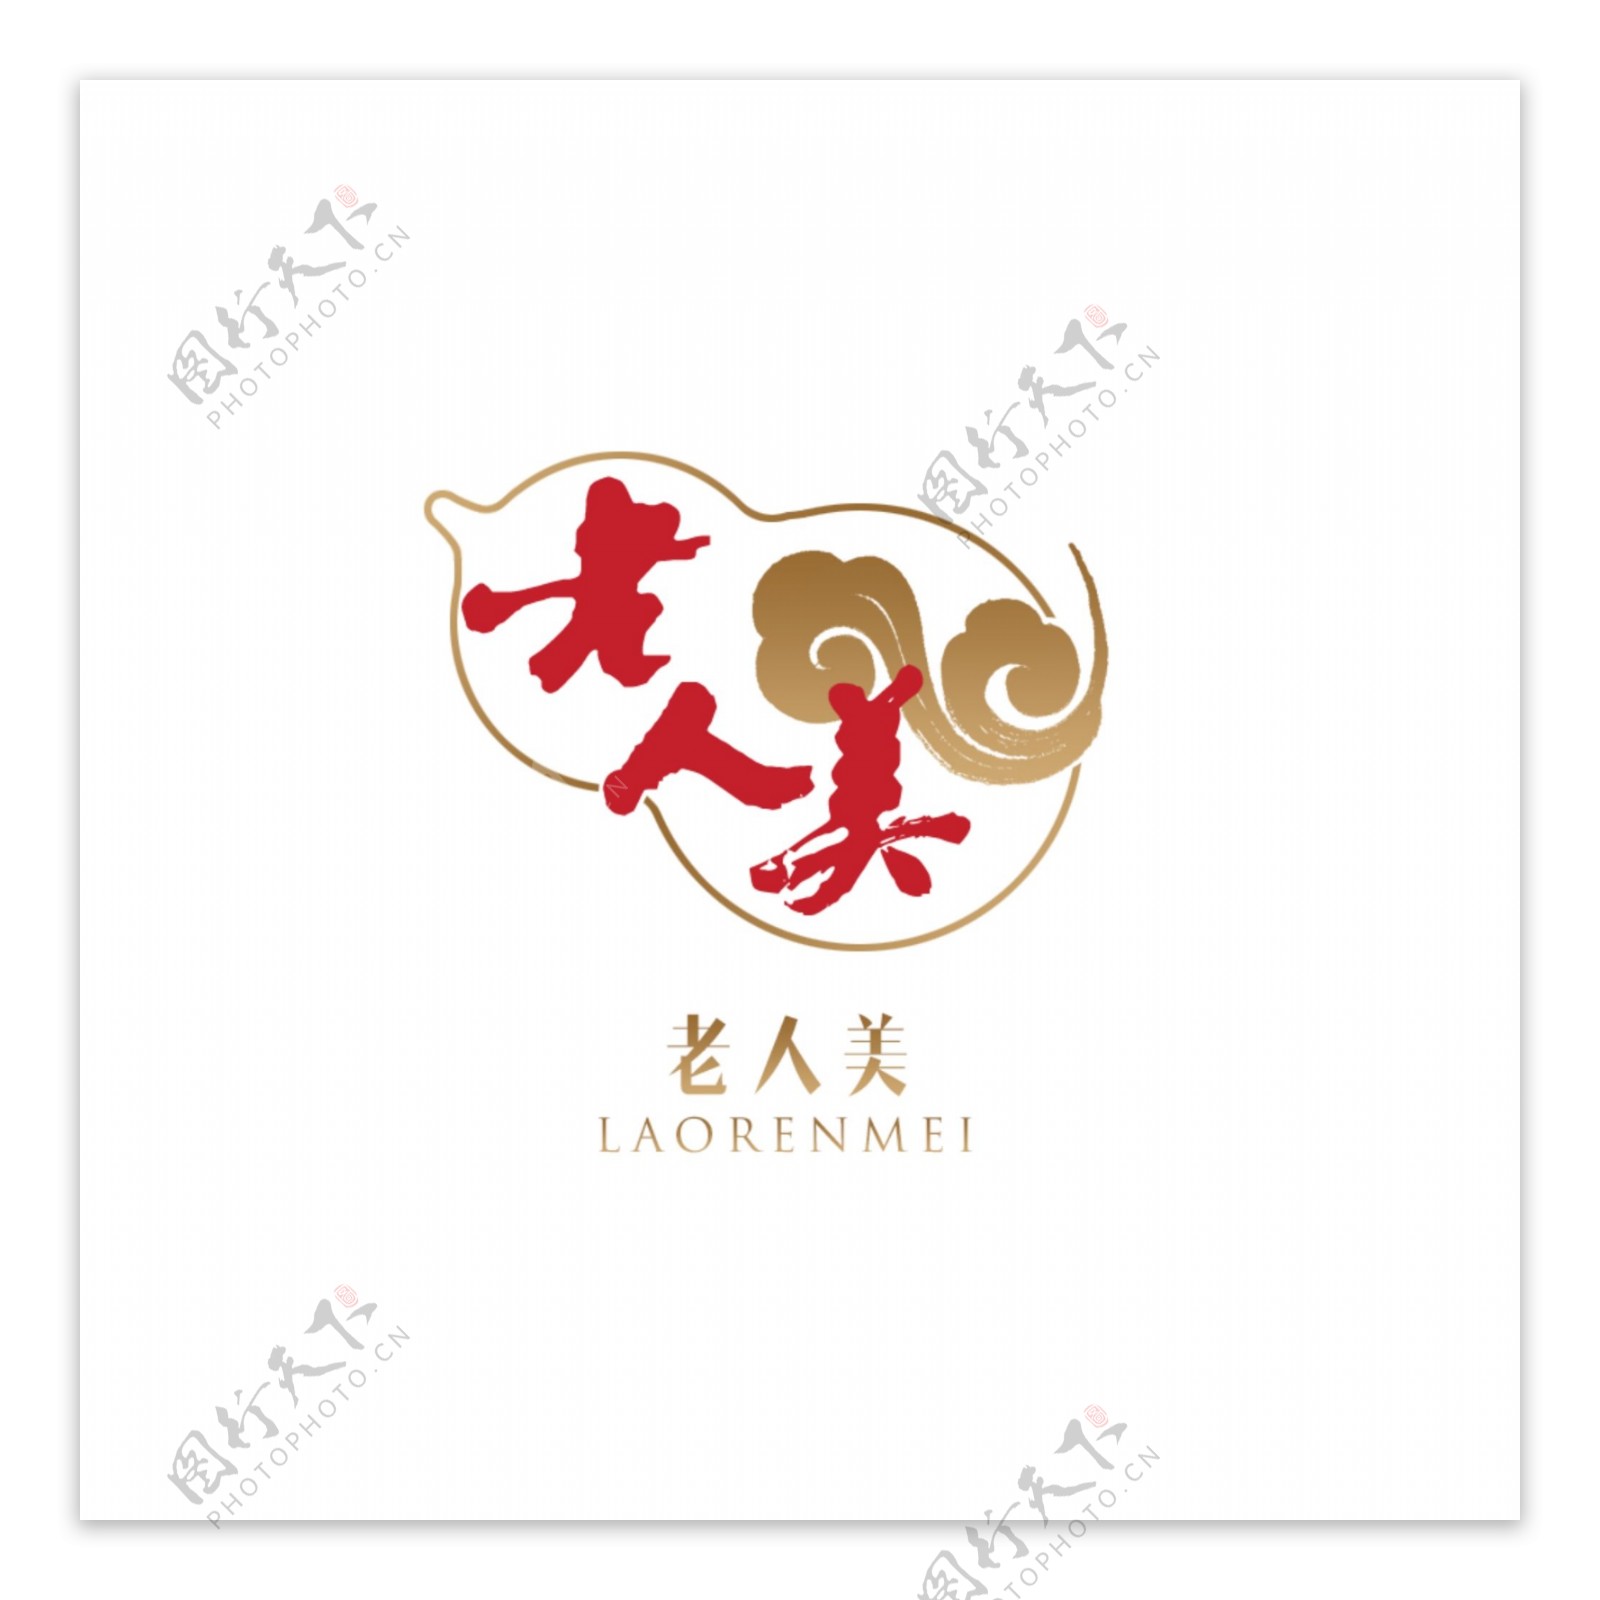 简约中国风logo设计